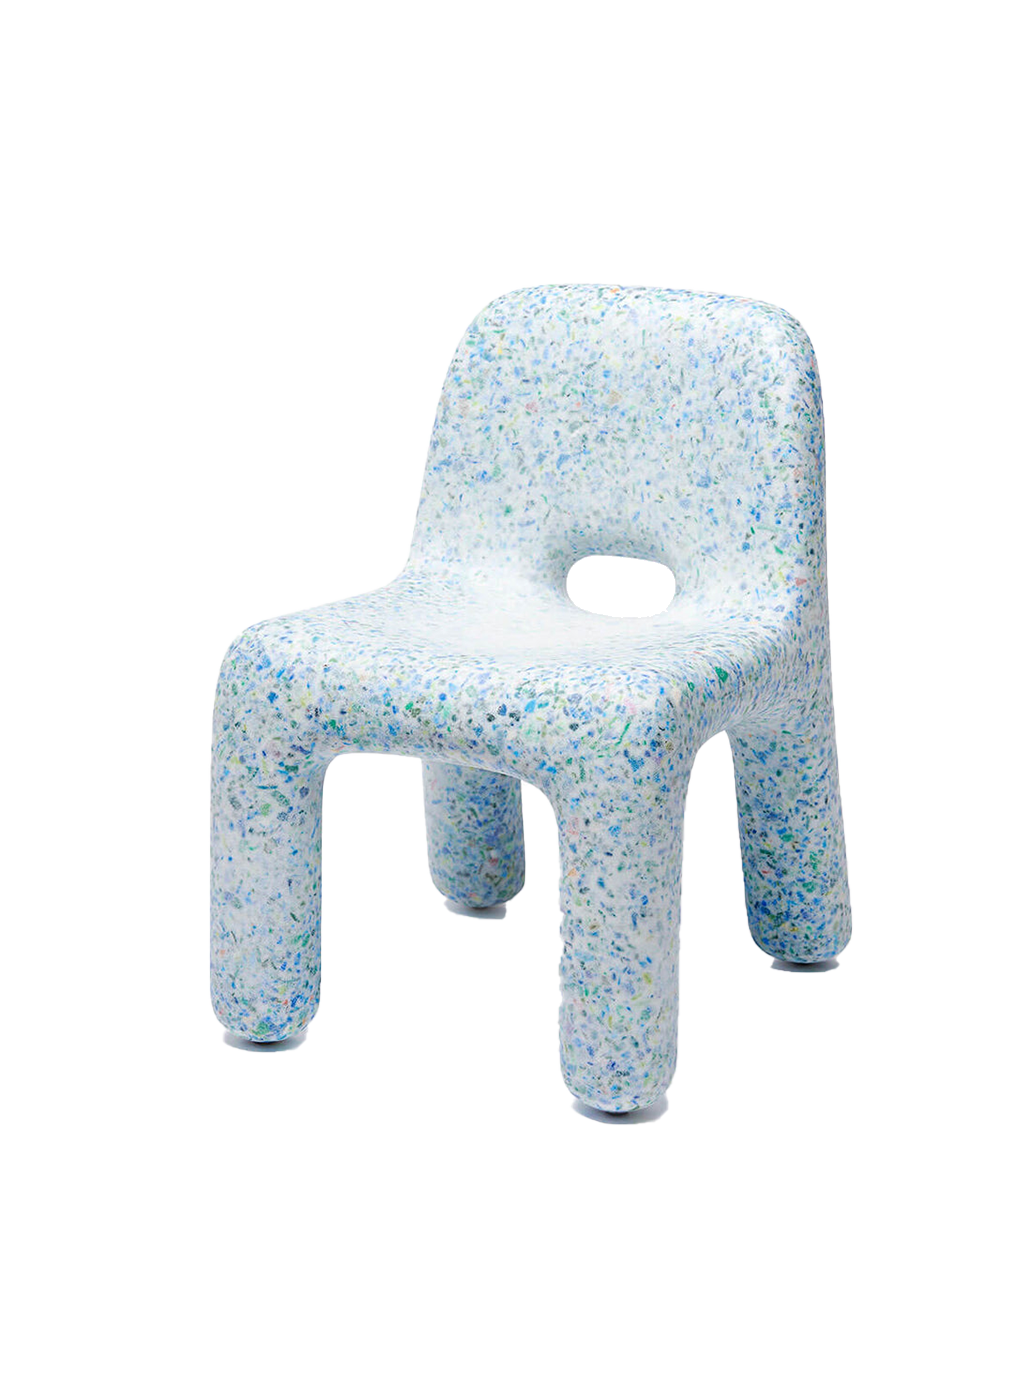 Stuhl aus umweltfreundlichem Material Charlie Chair